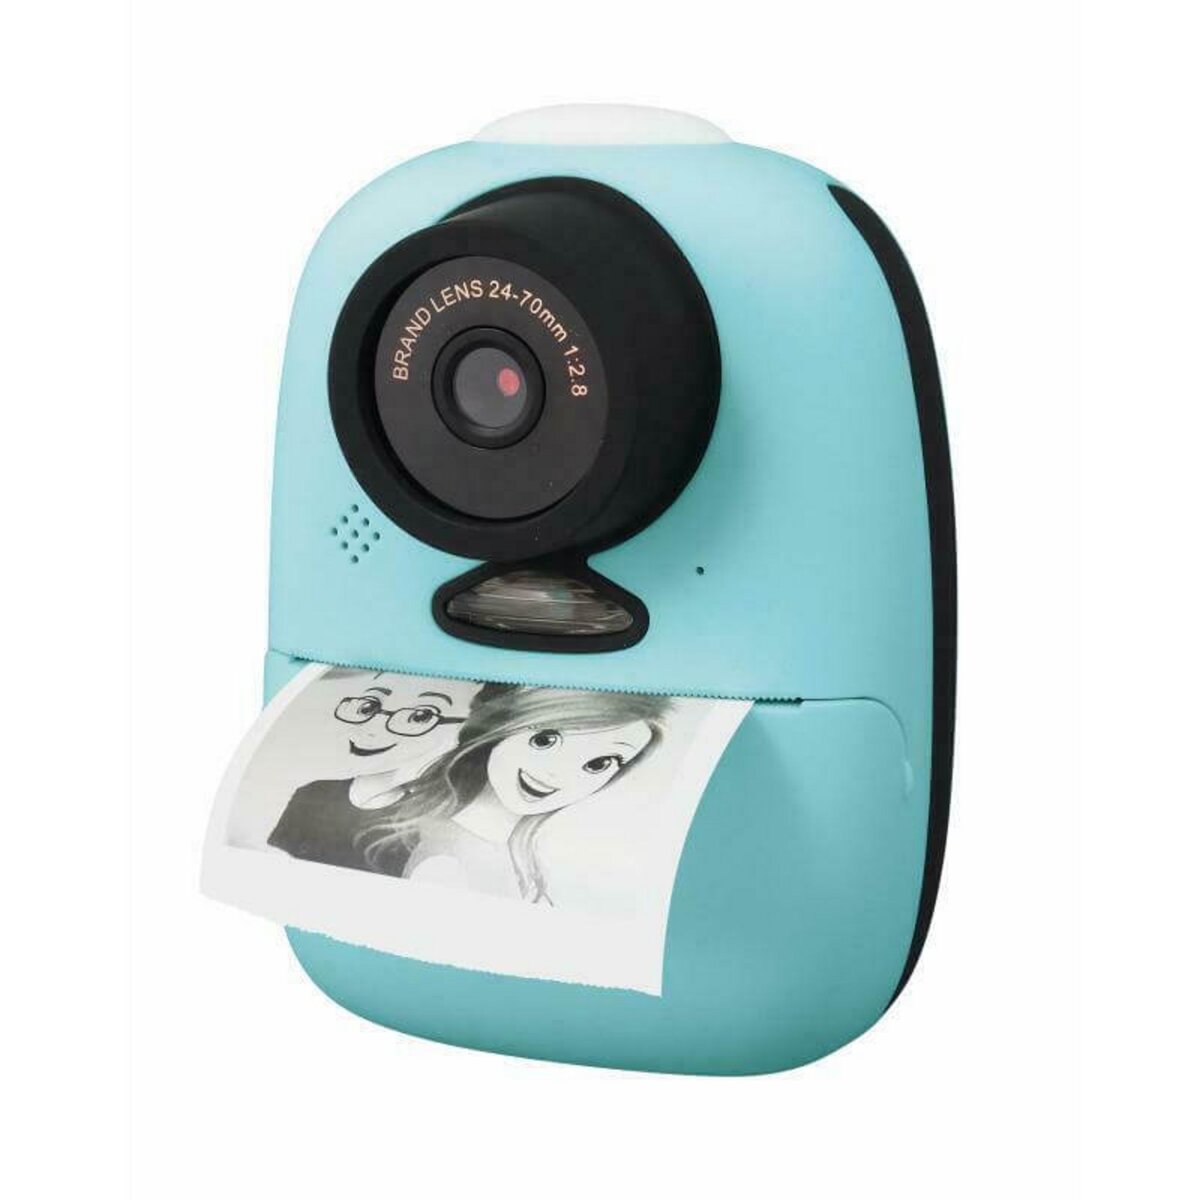 Imprimante, appareil photo : notre sélection d'appareils connectés pour  immortaliser vos souvenirs